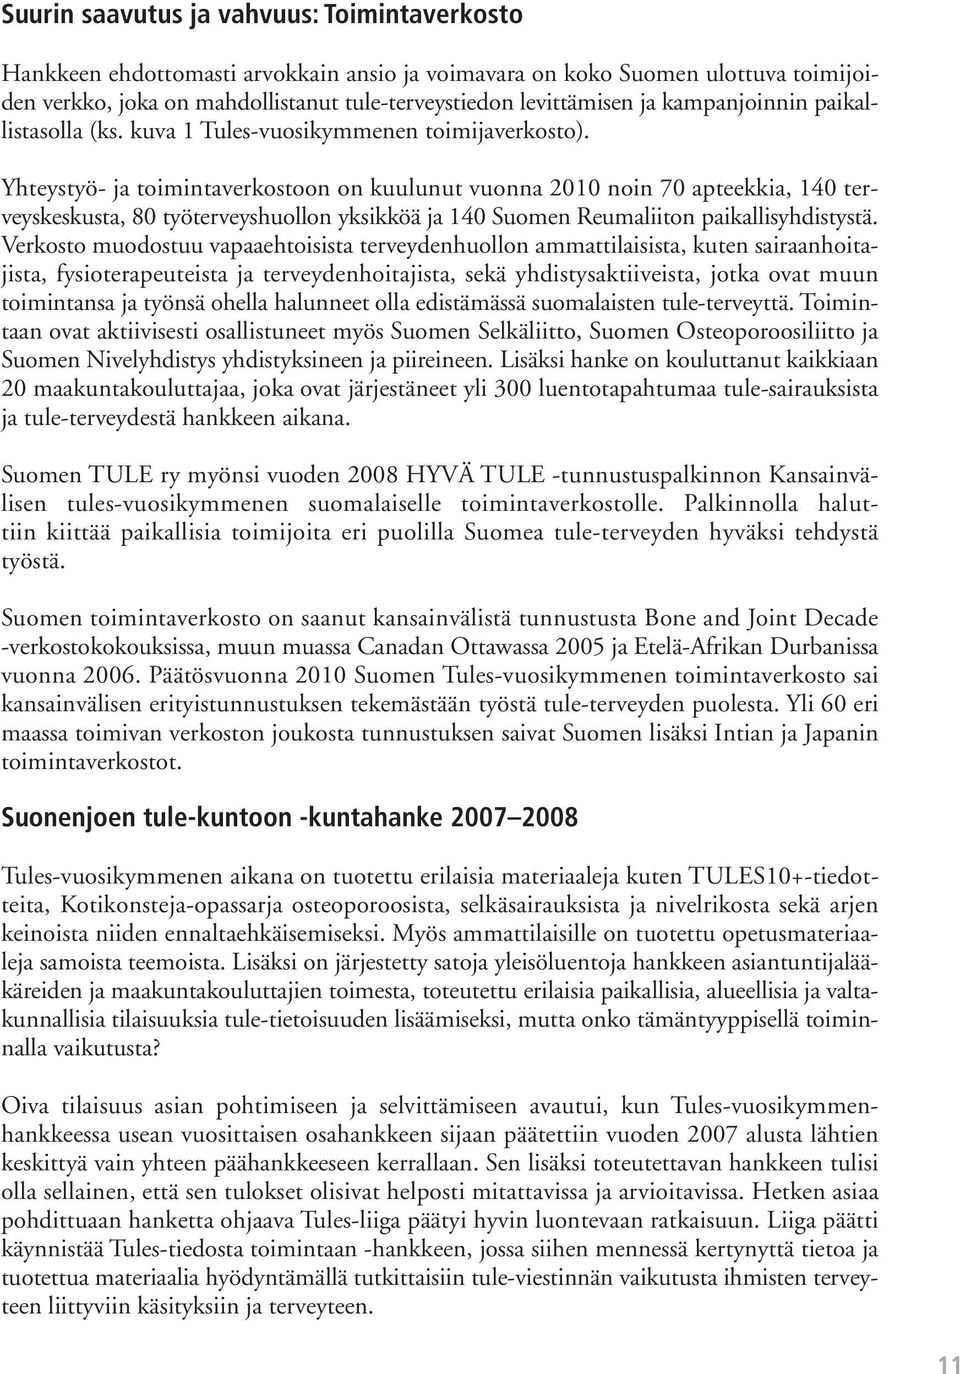 Yhteystyö- ja toimintaverkostoon on kuulunut vuonna 2010 noin 70 apteekkia, 140 terveyskeskusta, 80 työterveyshuollon yksikköä ja 140 Suomen Reumaliiton paikallisyhdistystä.